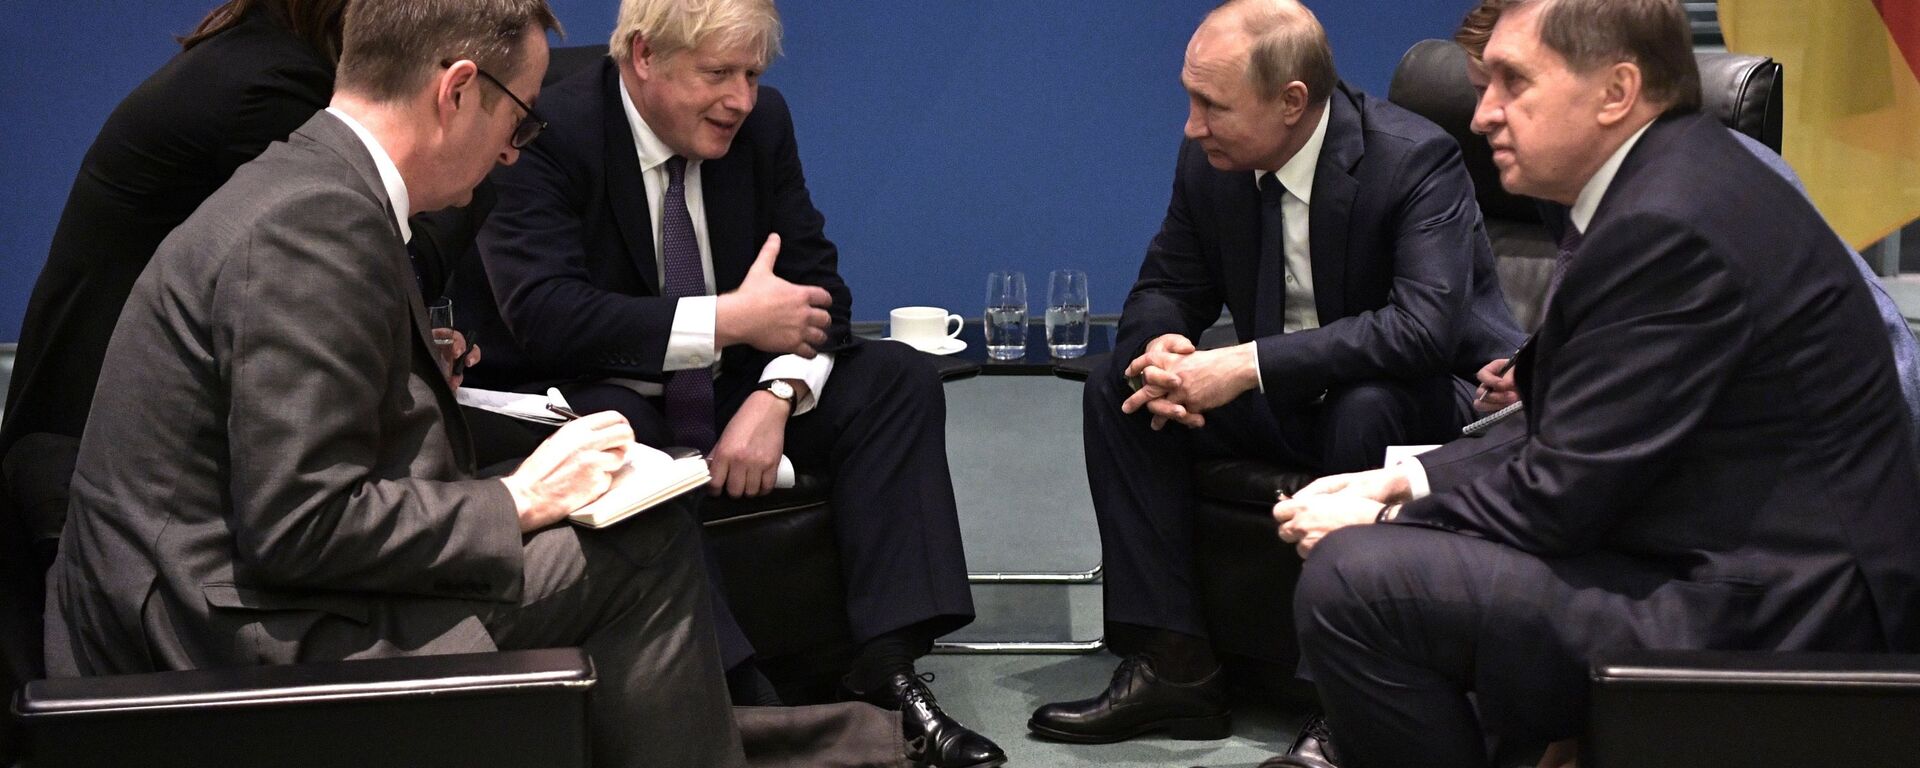 Британски премијер Борис Џонсон и председник Русије Владимир Путин на састанку у Берлину - Sputnik Србија, 1920, 13.12.2021